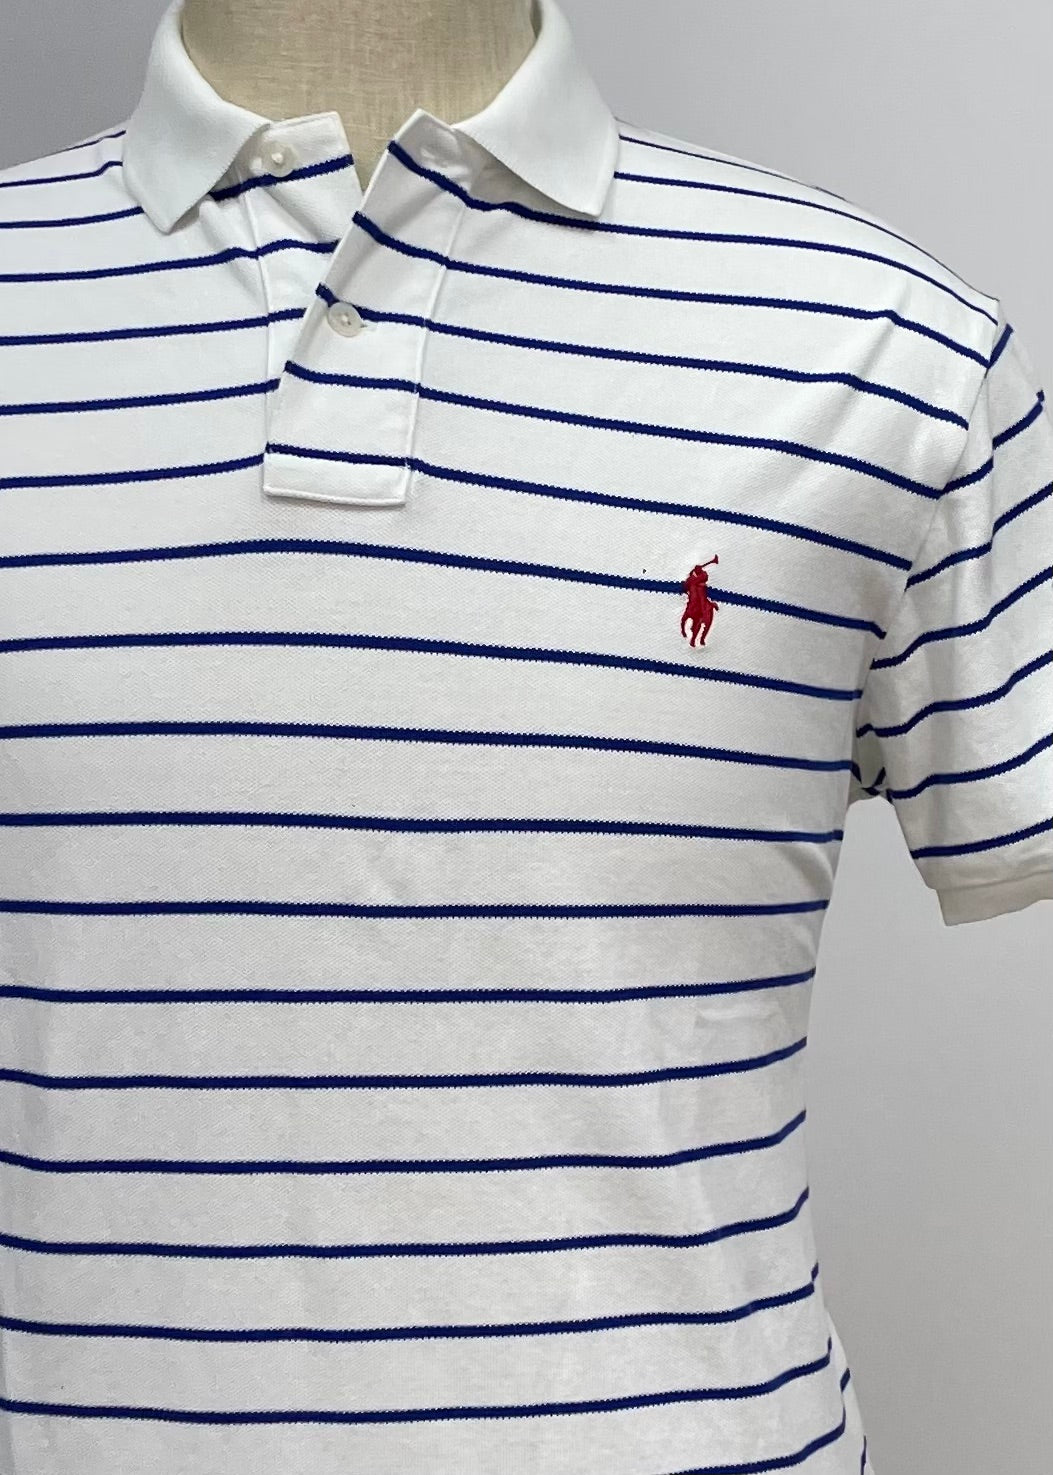 Camiseta Polo Ralph Lauren 🏇🏼 color blanco con diseño de rayas en azul oscuro Talla L Entalle Custom Fit